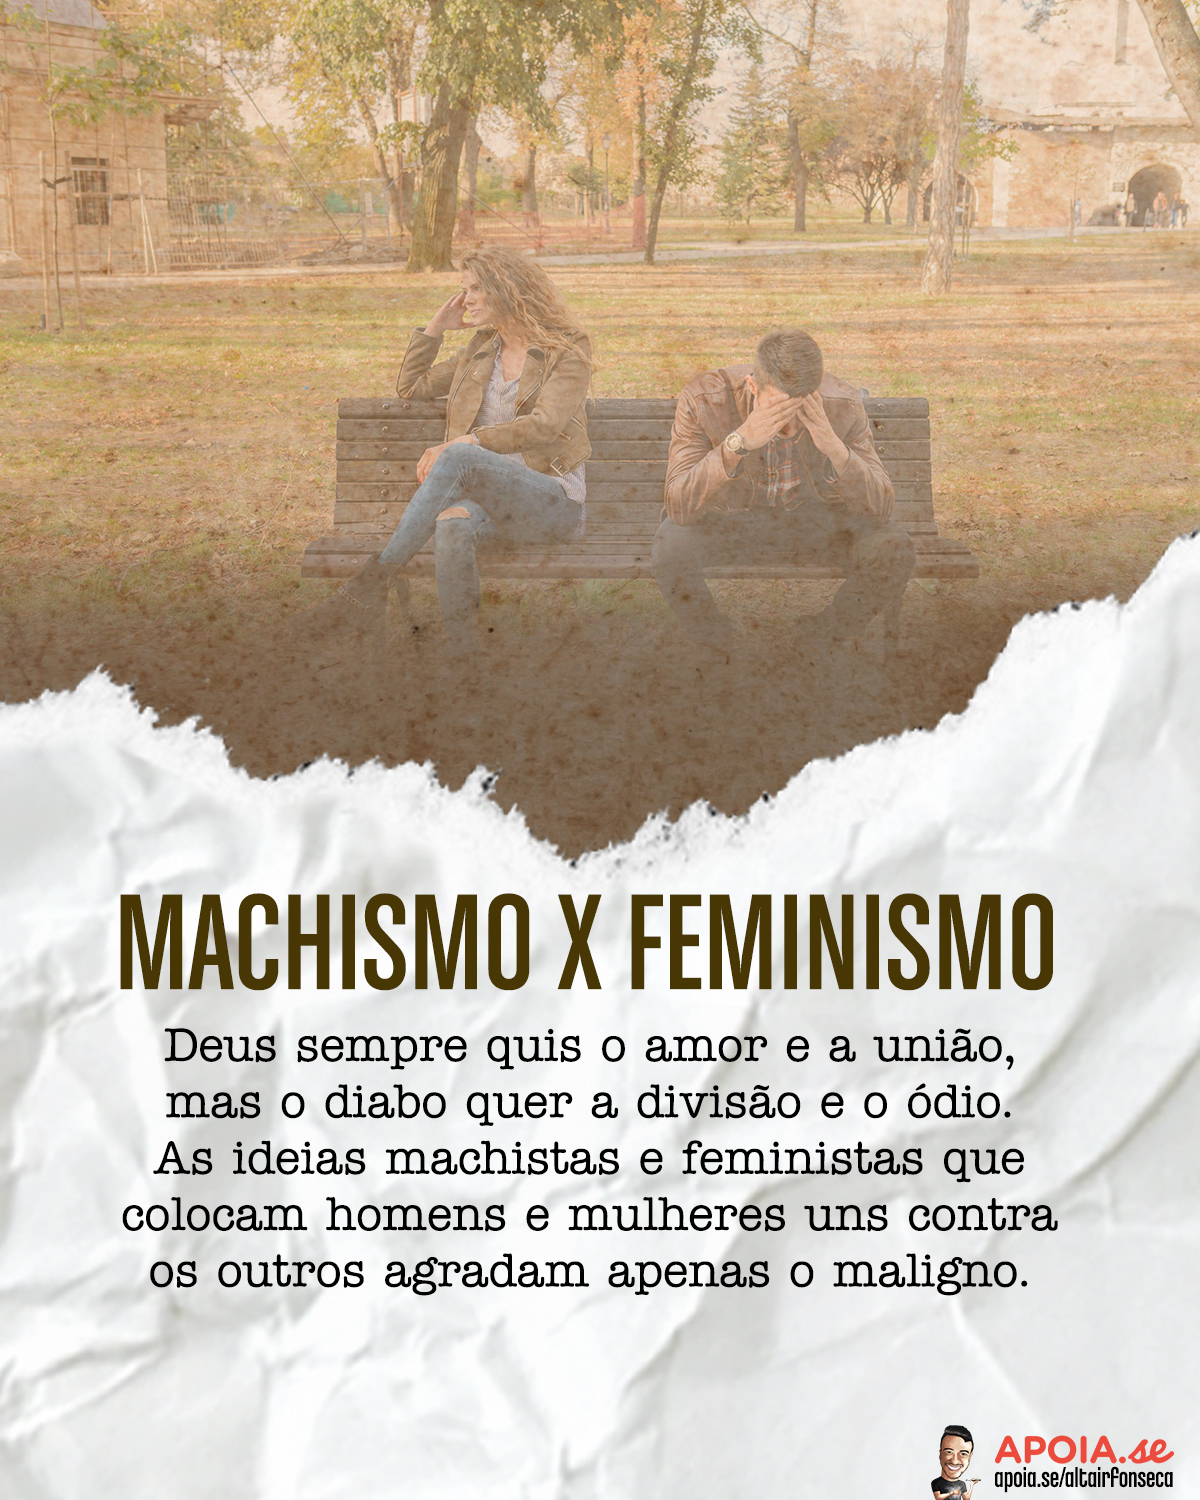 Machismo x feminismo